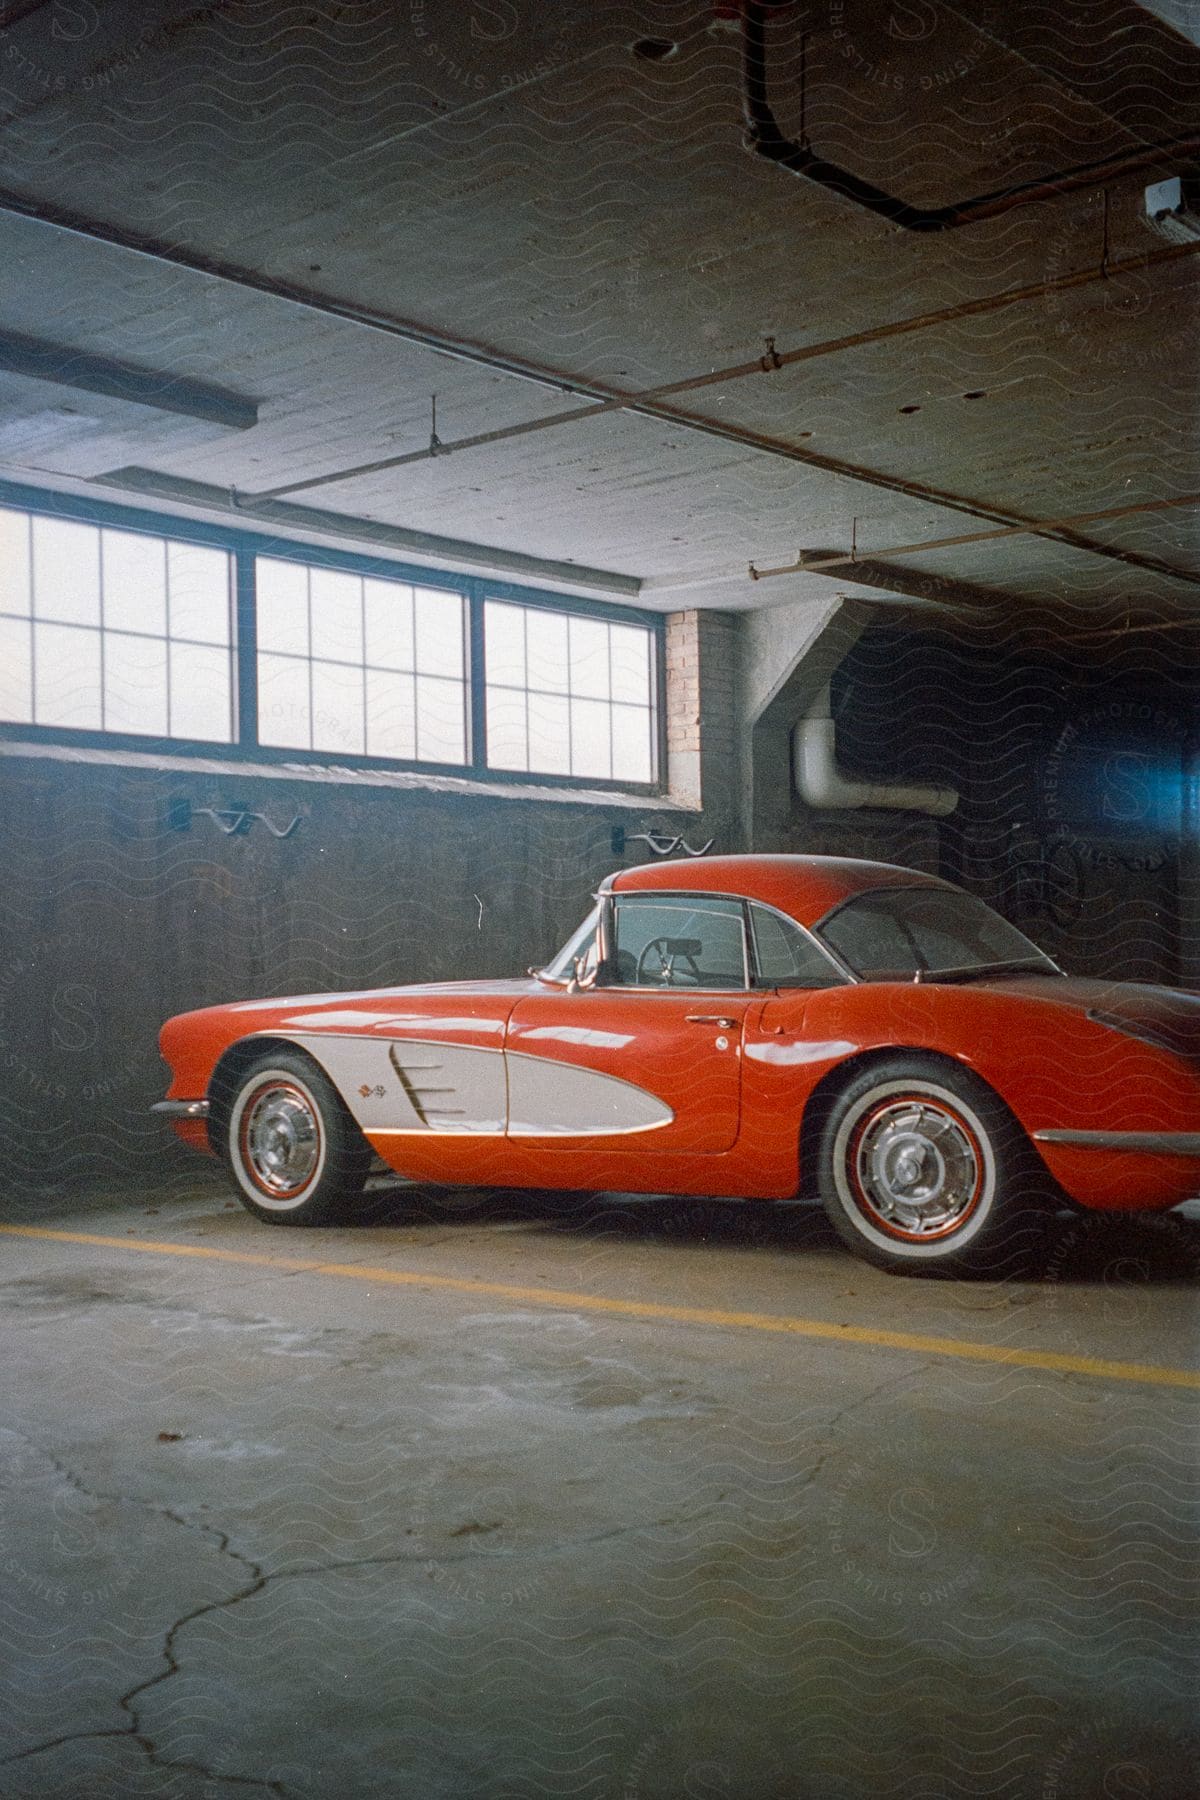 A vintage orange car parked in a garage beneath a window